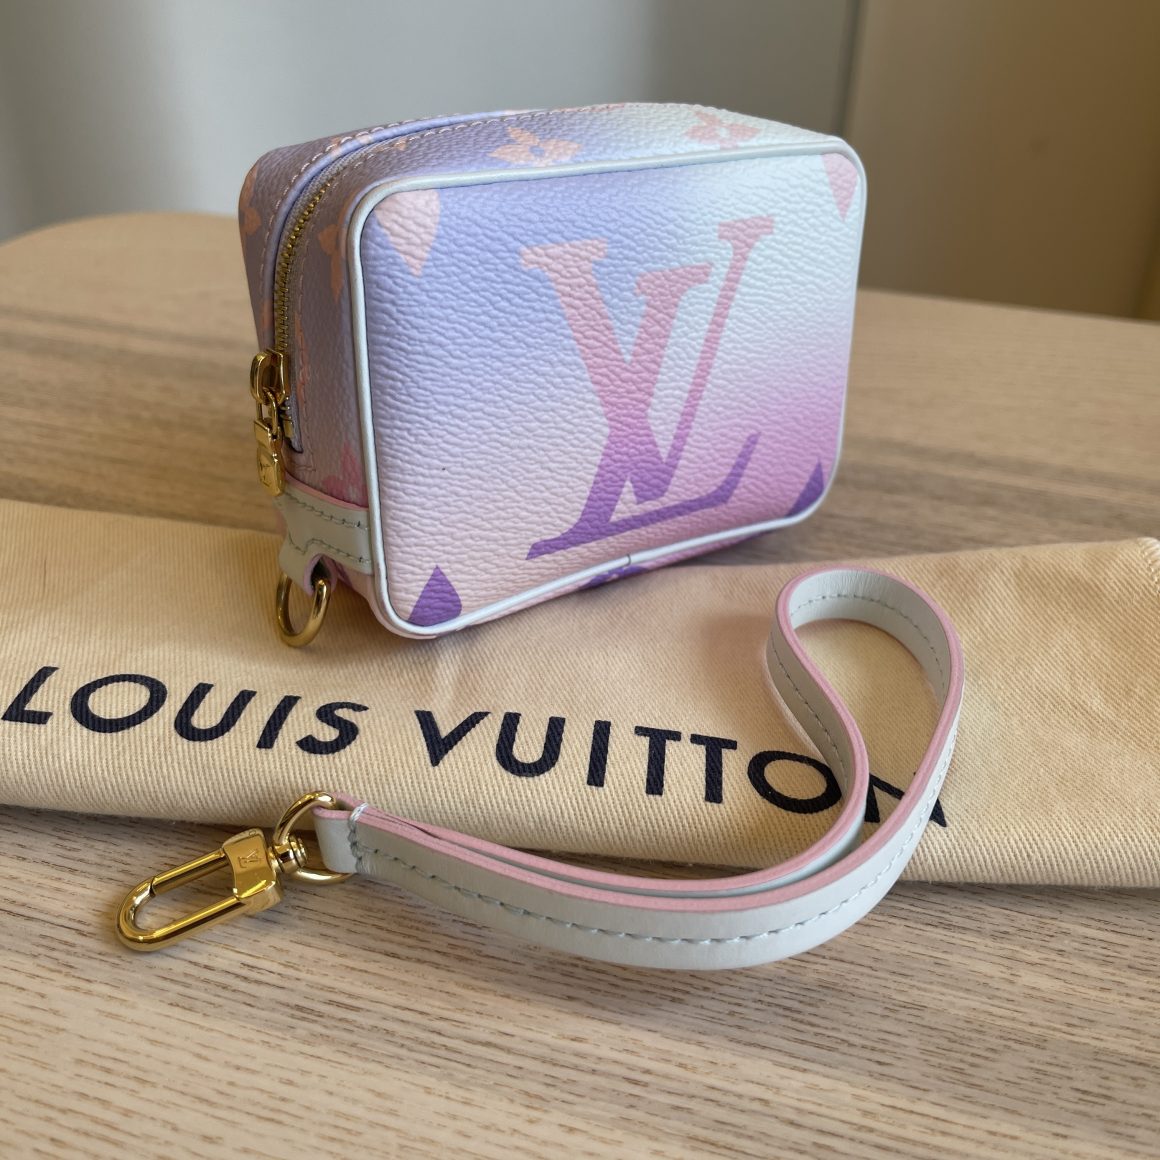 NEW LIMITED Louis Vuitton WAPITY CASE M81339 Sunrise Pastel Monogram France